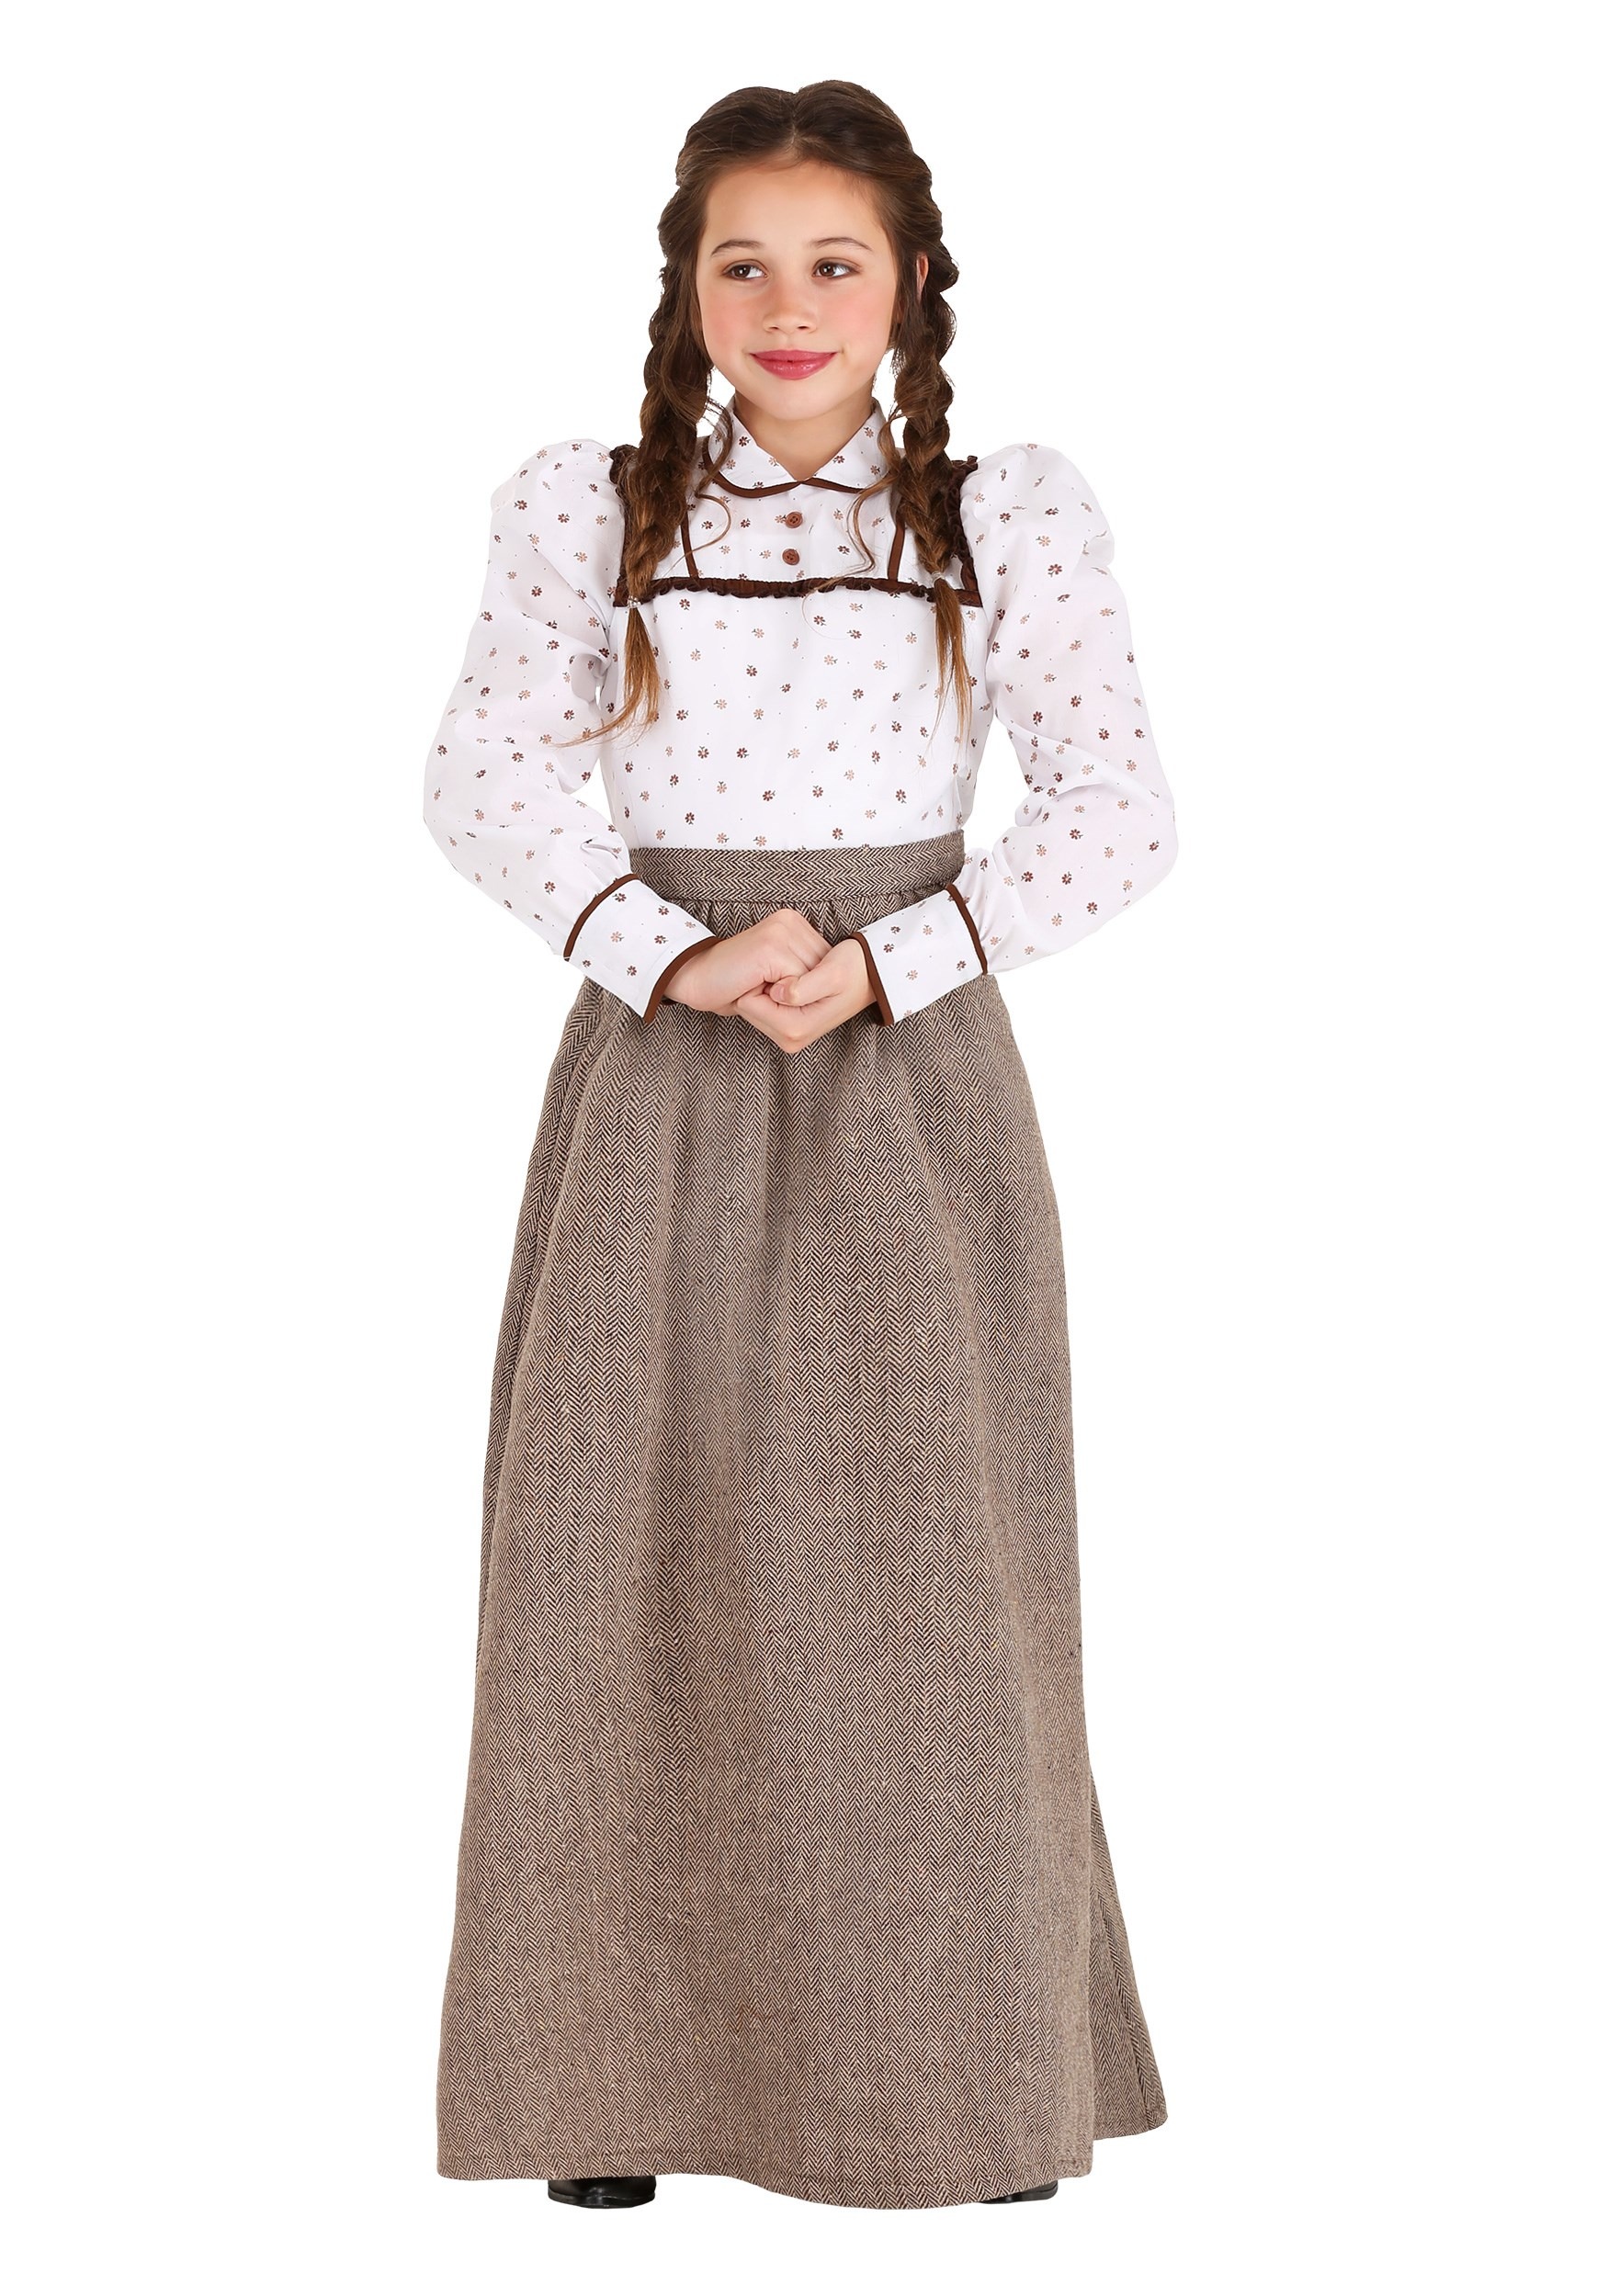 Girl’s Westward Pioneer Costume